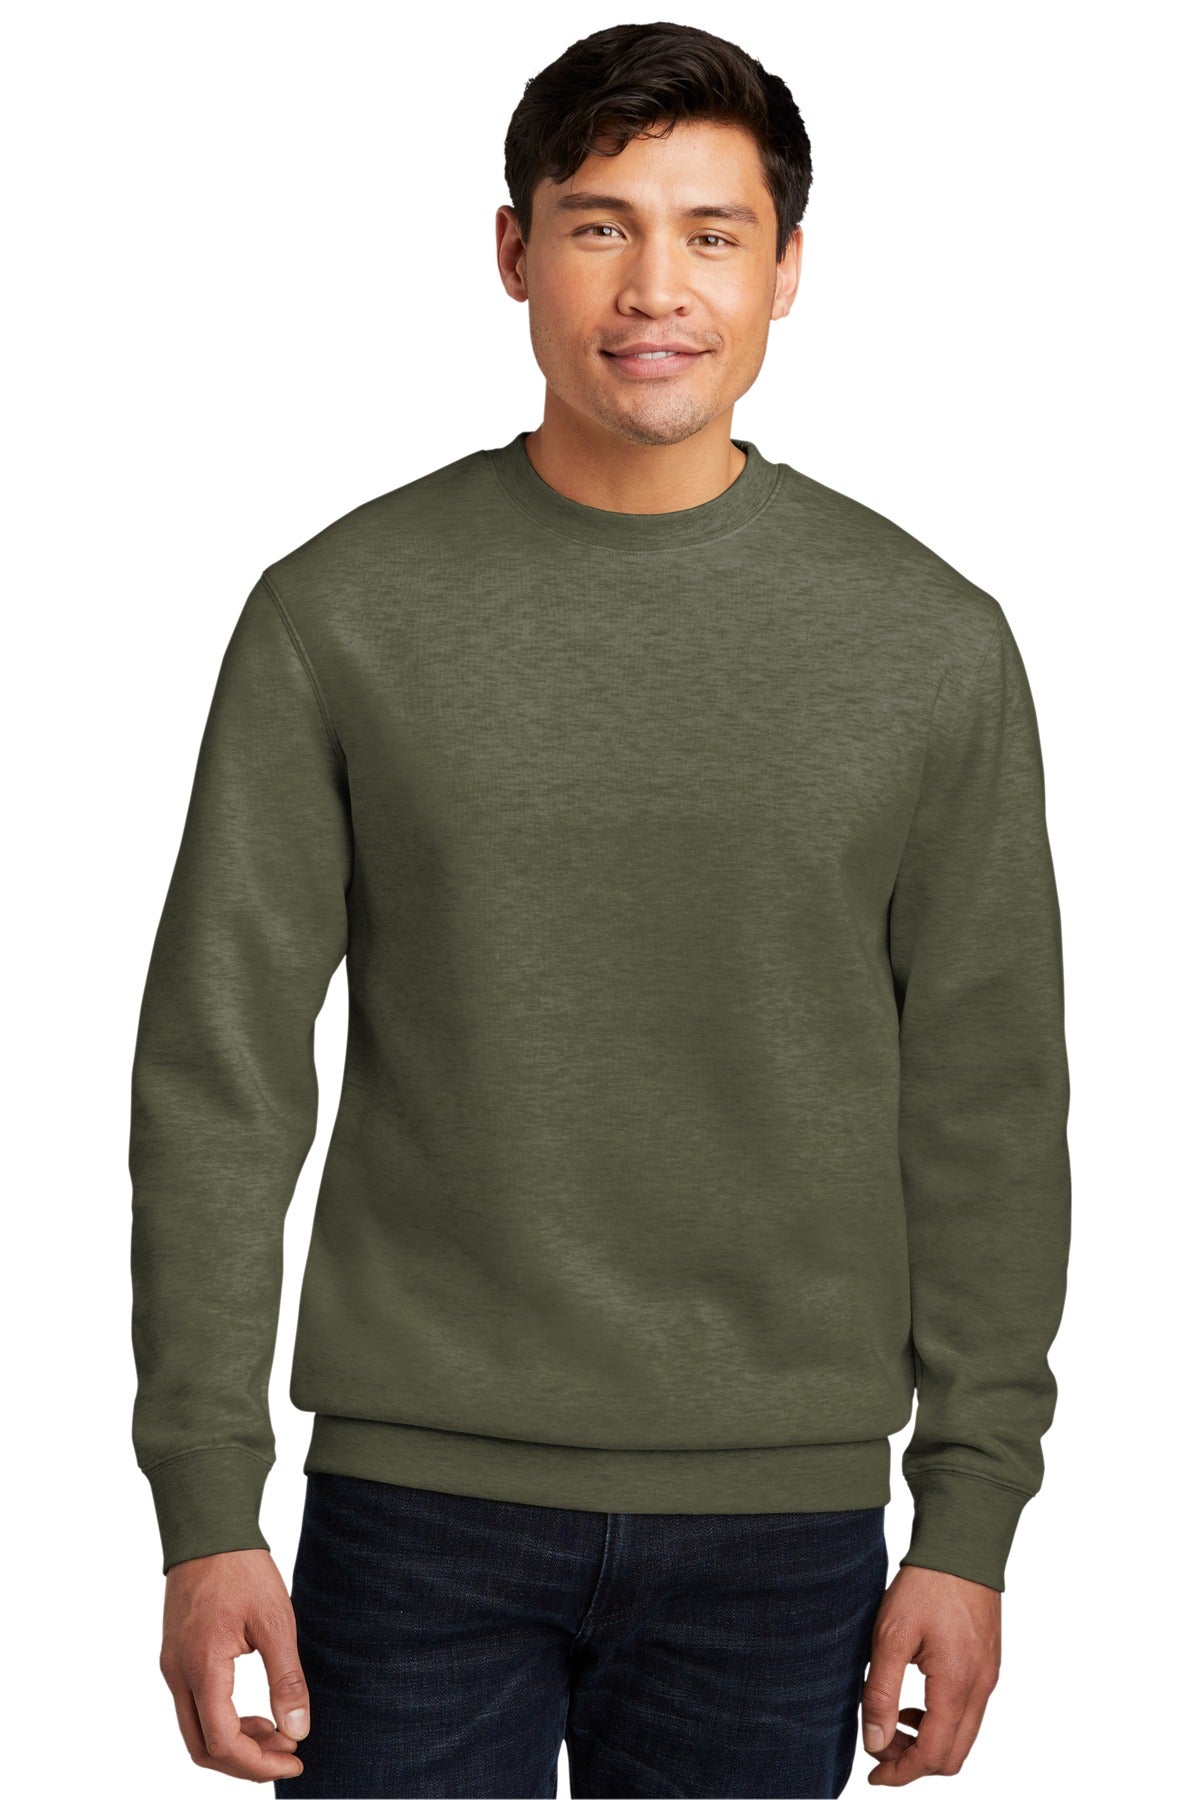 Sweatshirts/Fleece Heathered Olive District